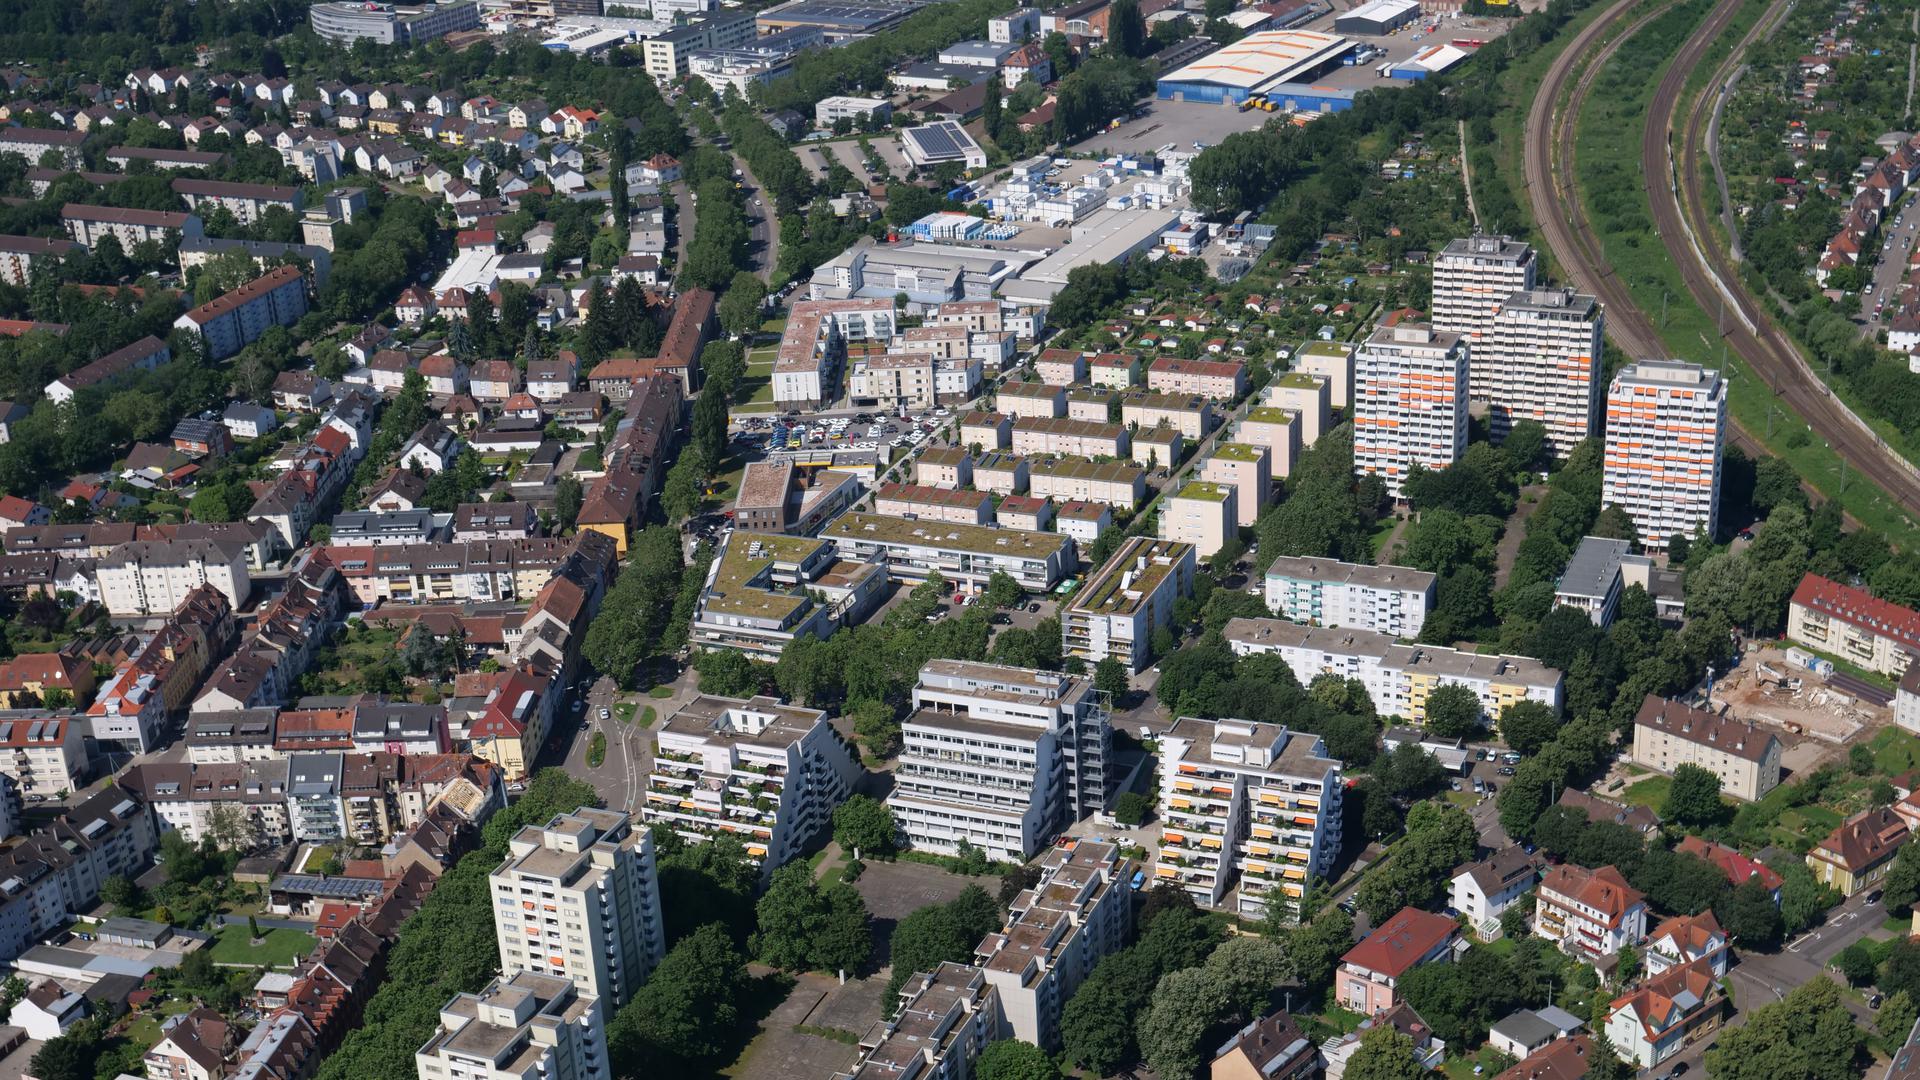 Luftbild 2019 Karlsruhe-Durlach: Blick auf das Areal Killisfeldstraße, Raiherwiesenstraße mit ehemaliger Paracelsus-Klinik (Terrassengebäude) sowie Pfaffstraße mit den Hochhäusern der so genannten Richt-Anlage (rechts) neben den Eisenbahngleisen